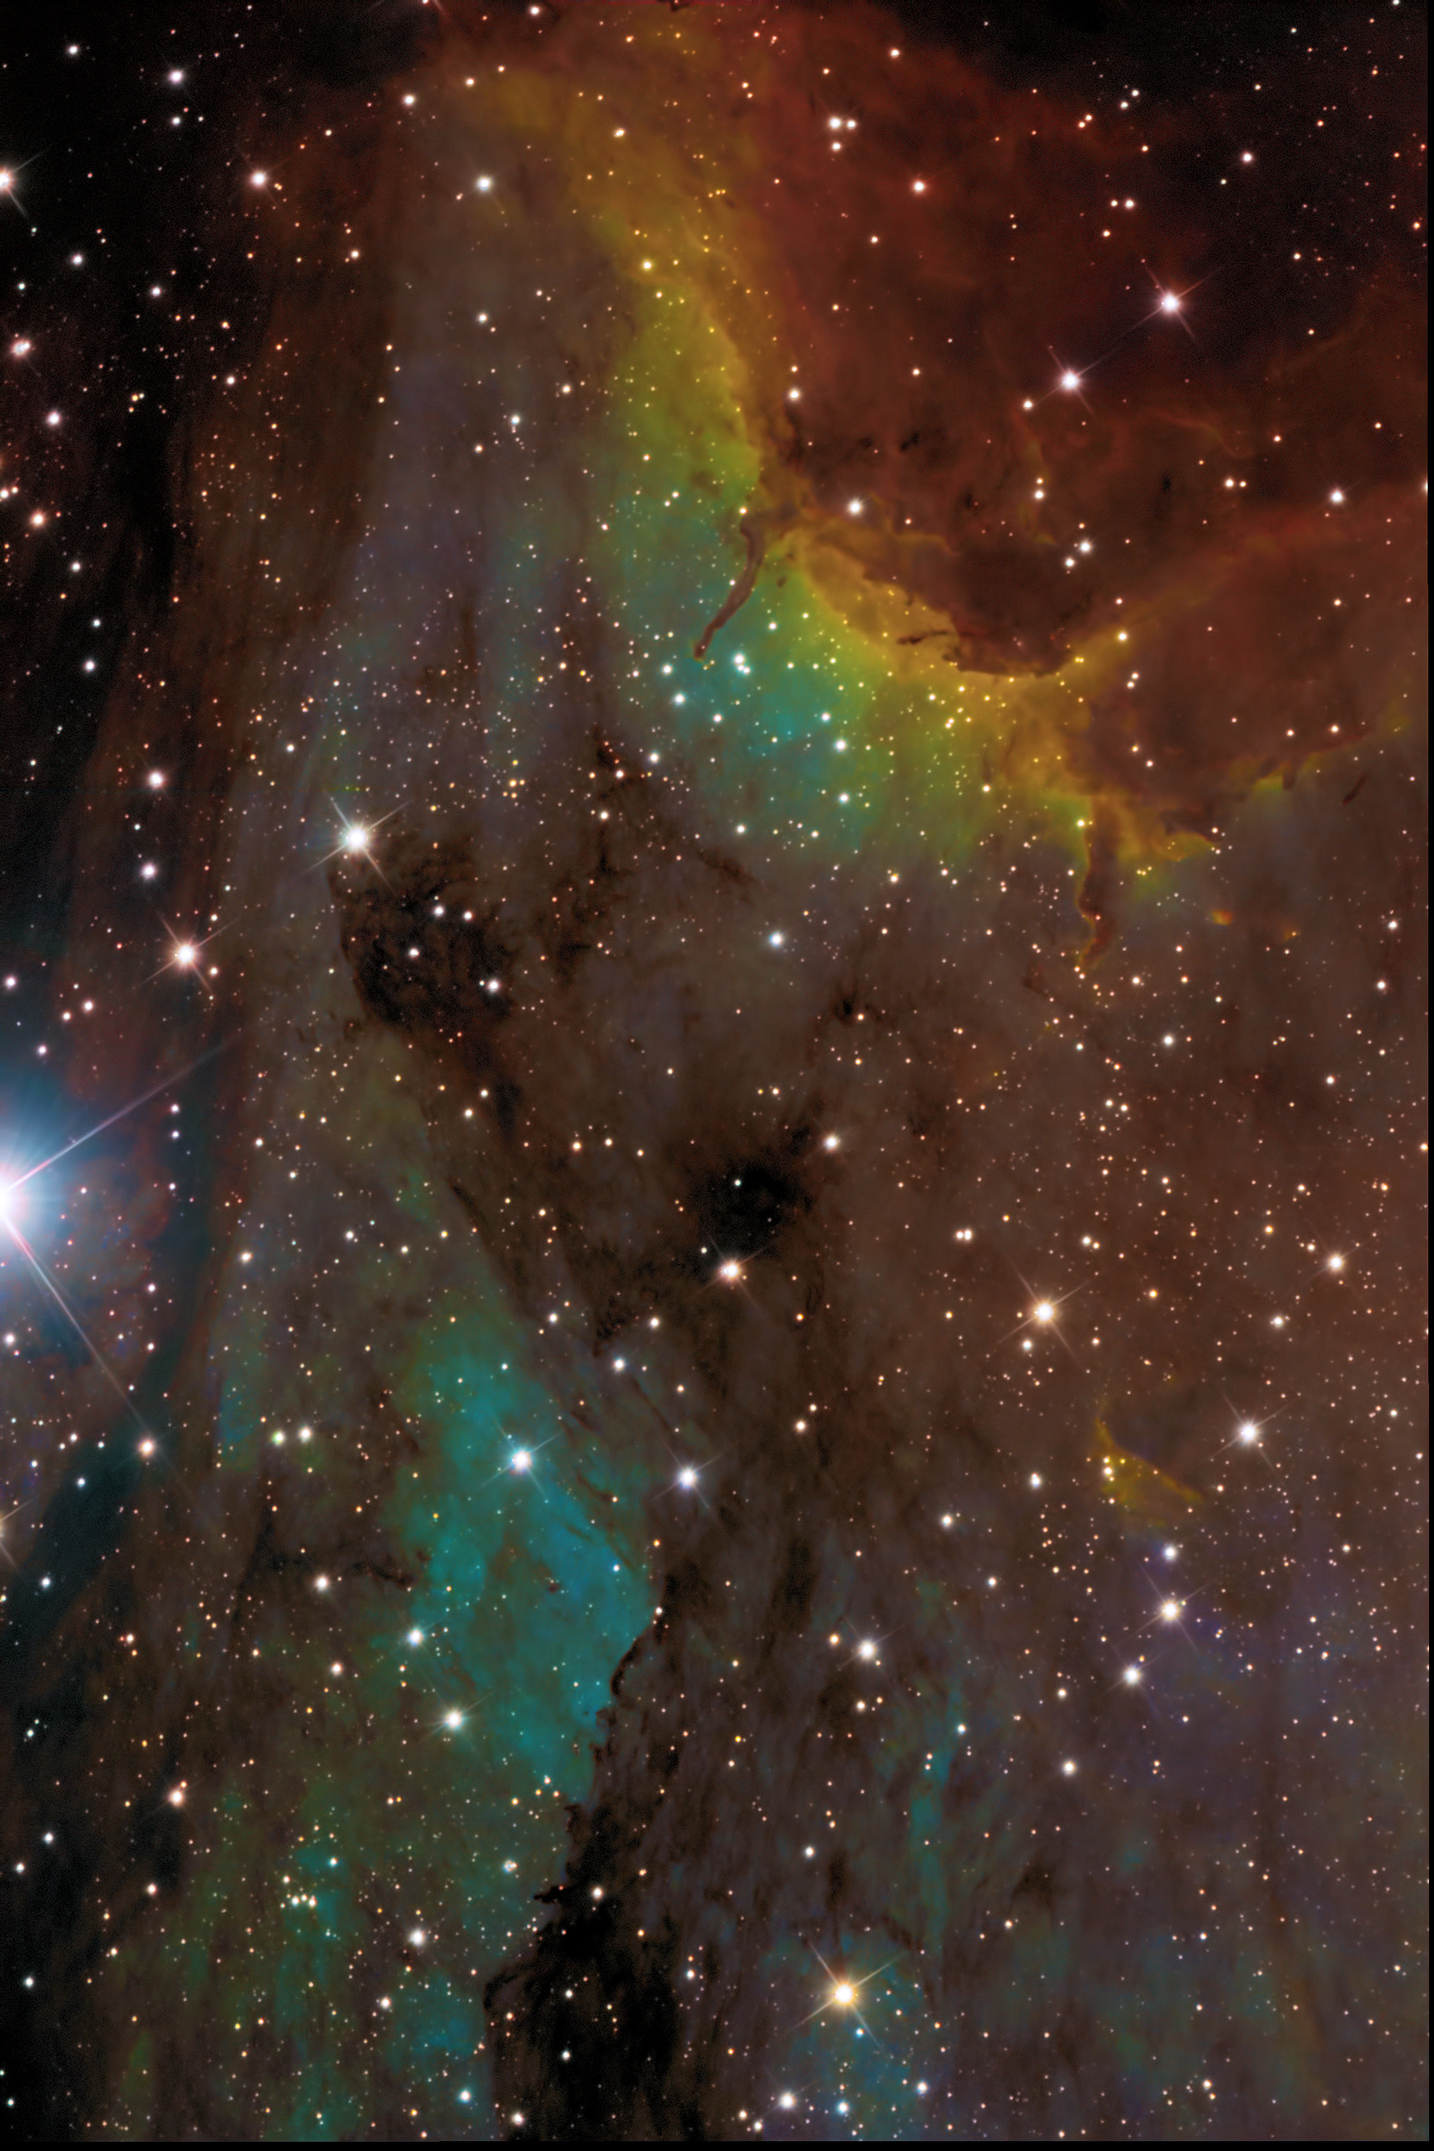 NGC 5070